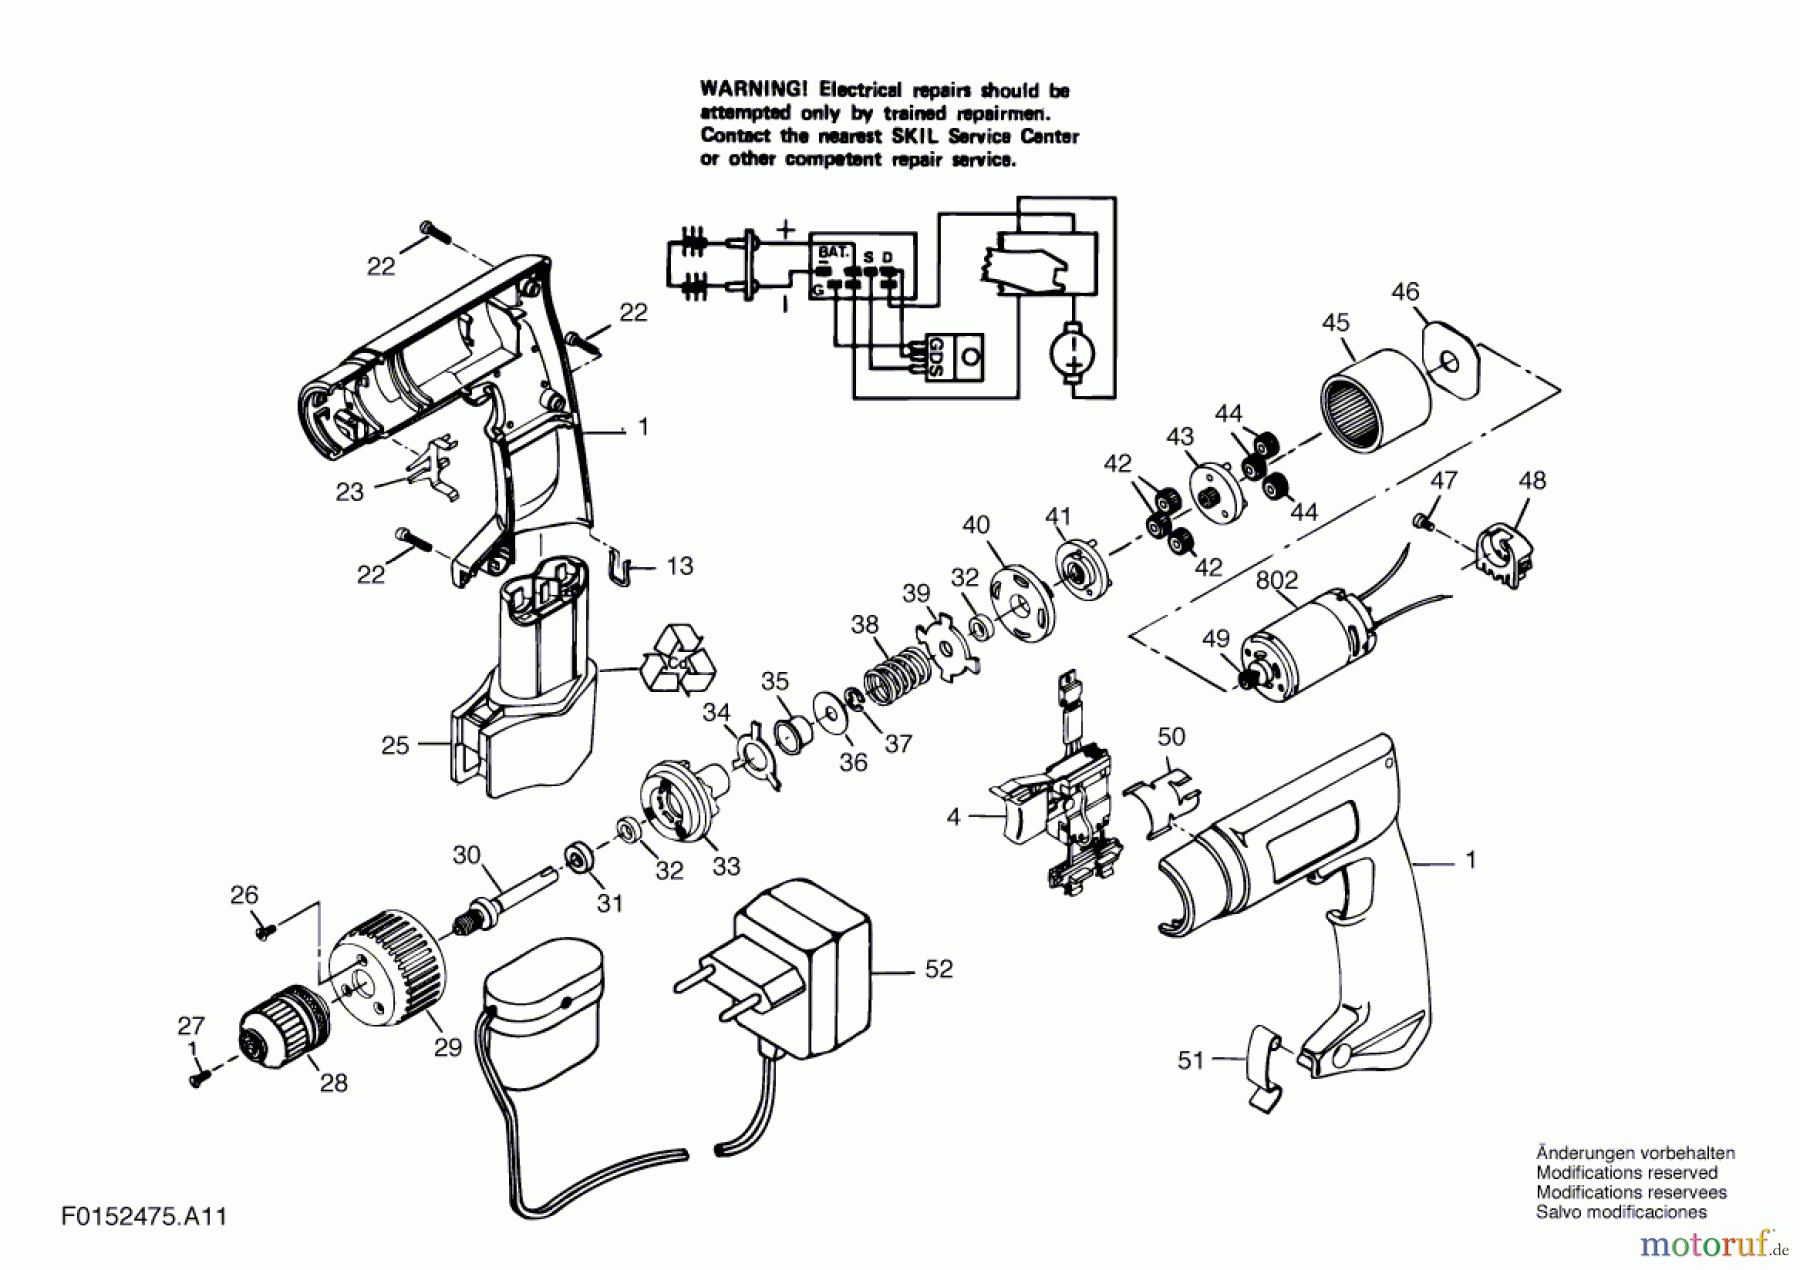  Bosch Werkzeug Bohrschrauber 2475U1 Seite 1